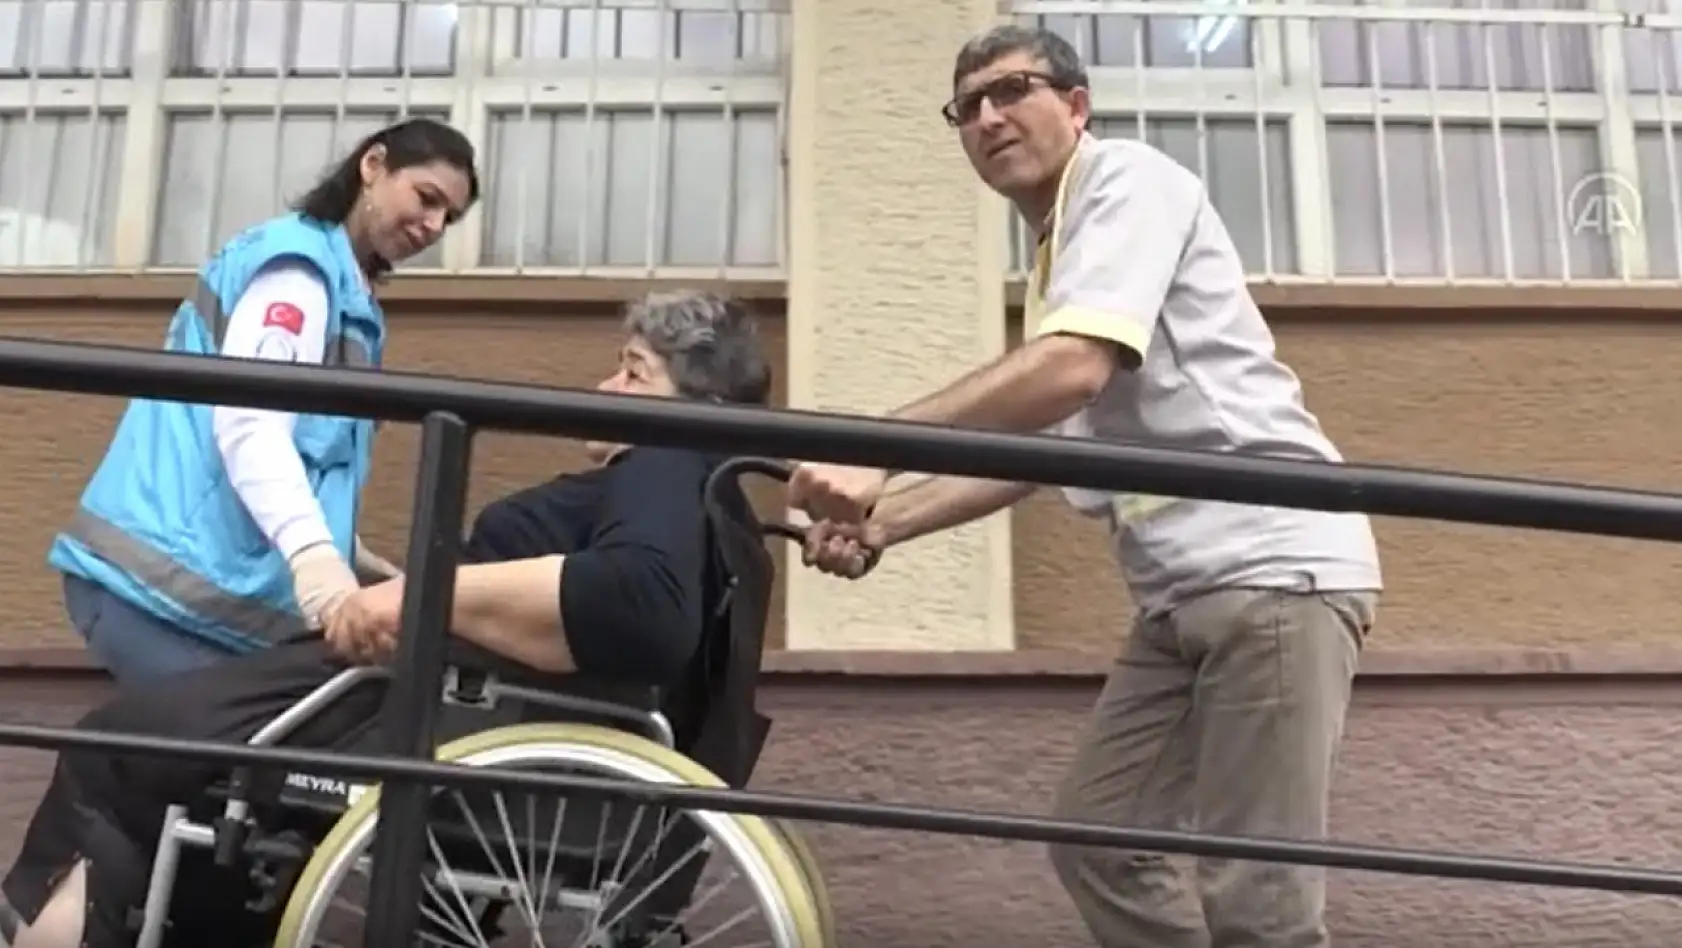 Oy veremeye tekerlekli sandalye ile götürüldü